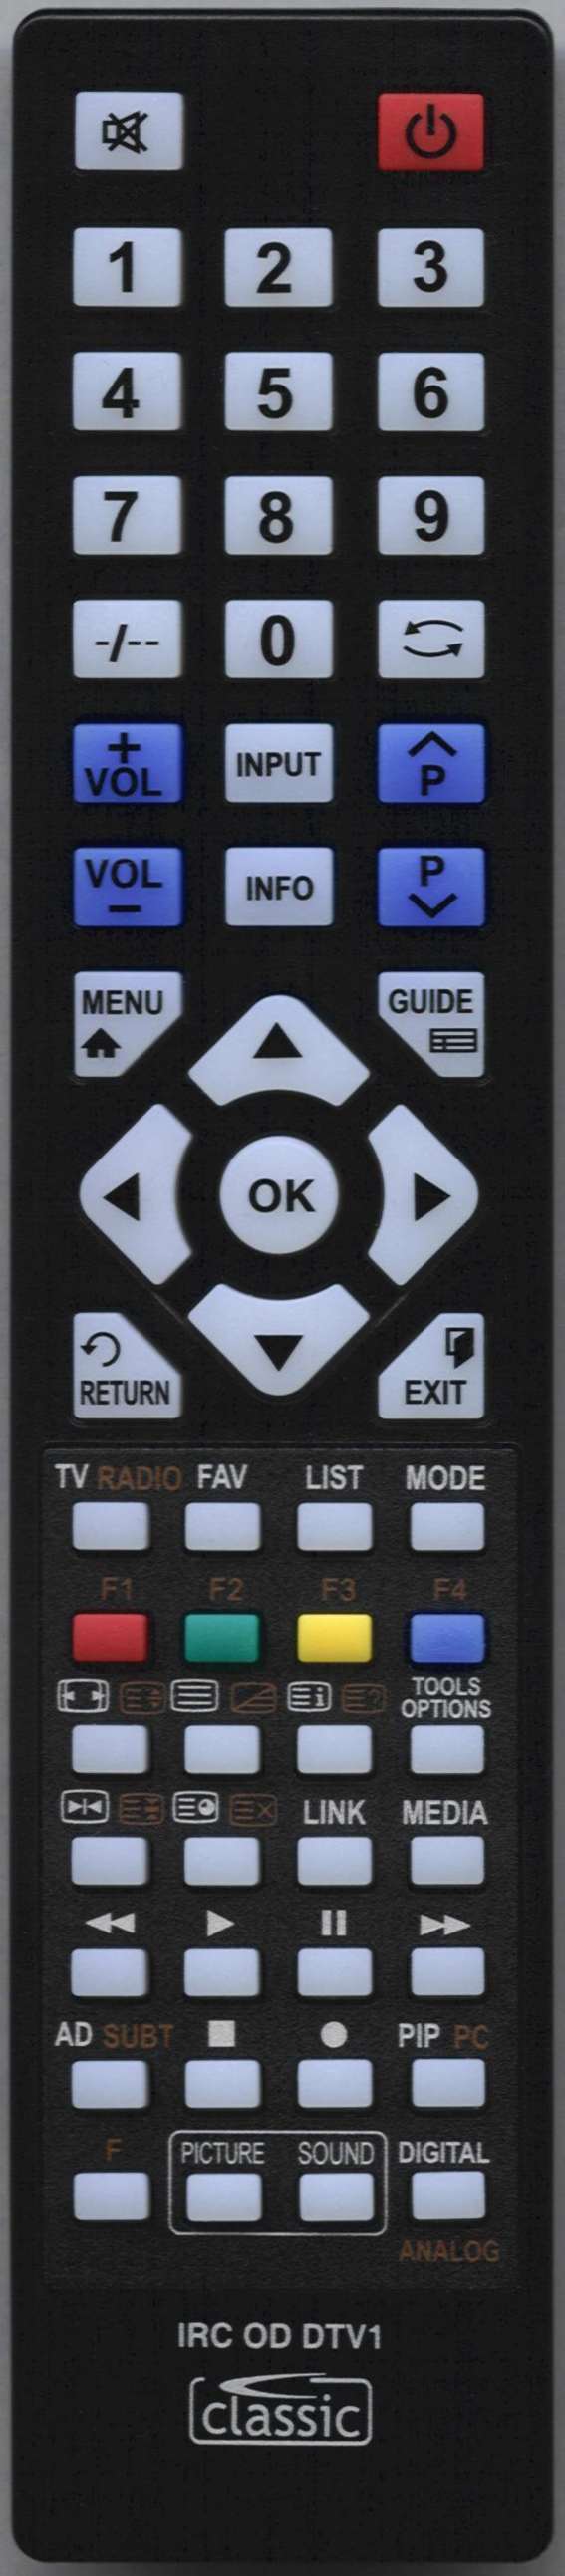 UMC Q14L04E01G-788 Remote Control